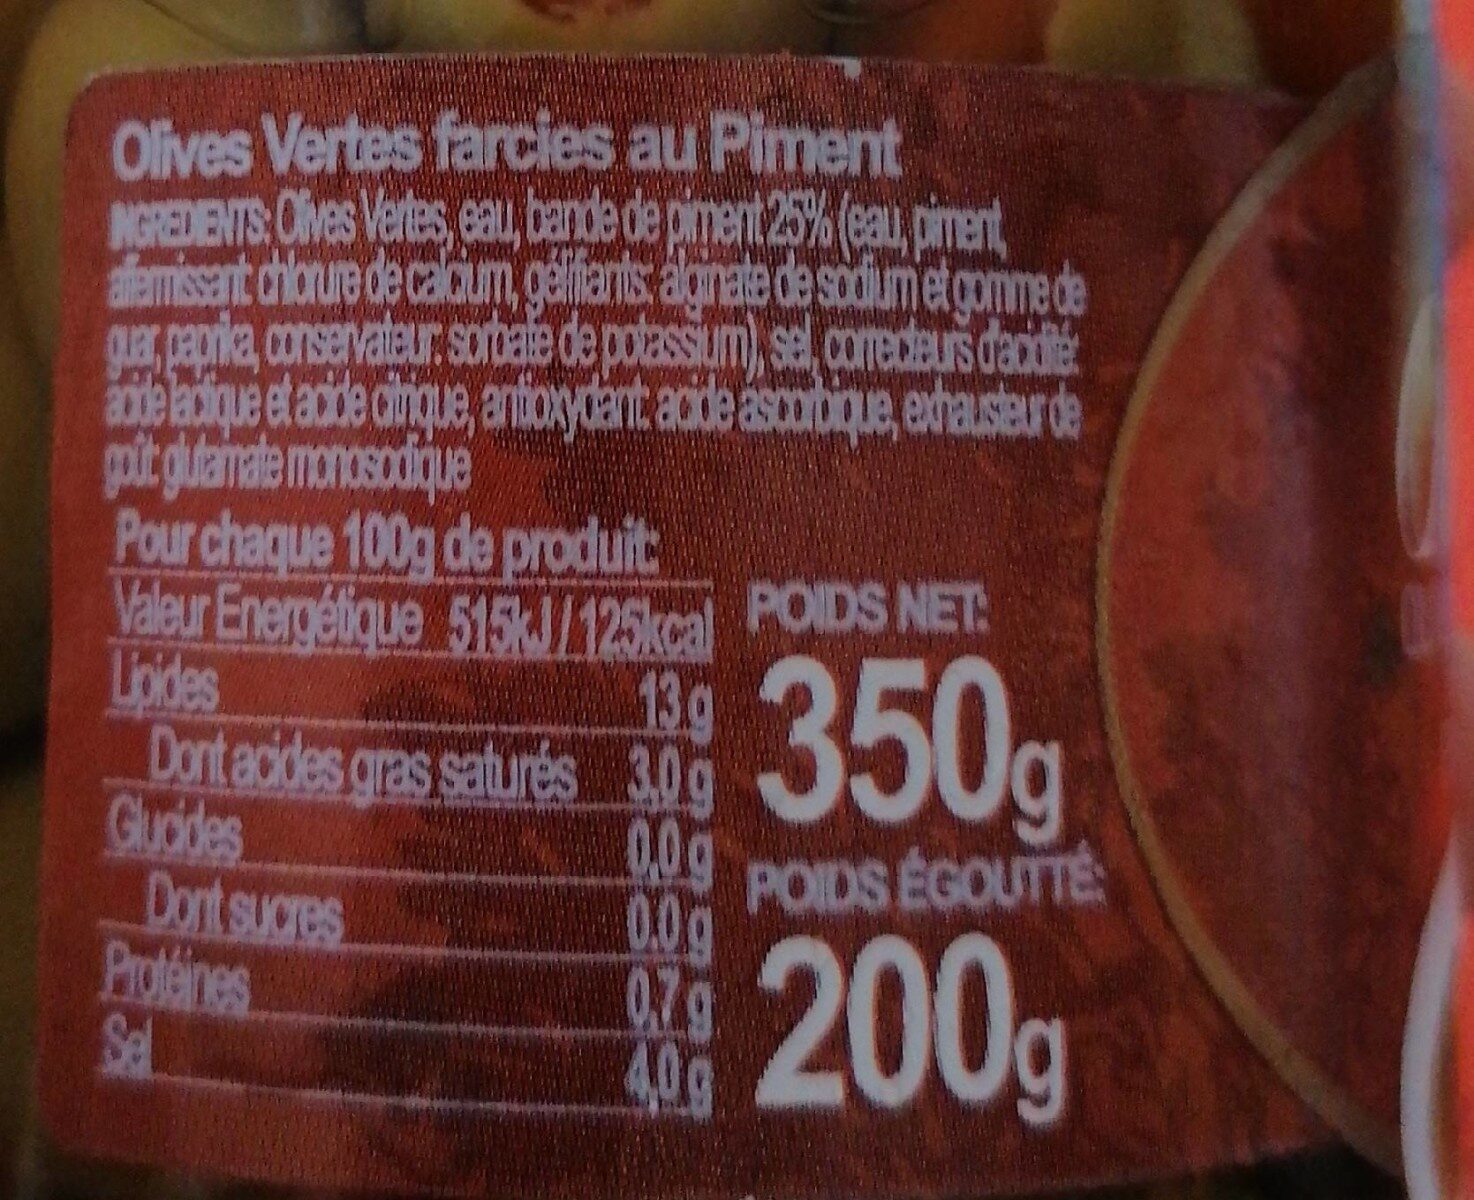 Olives vertes au piment - Nutrition facts - fr